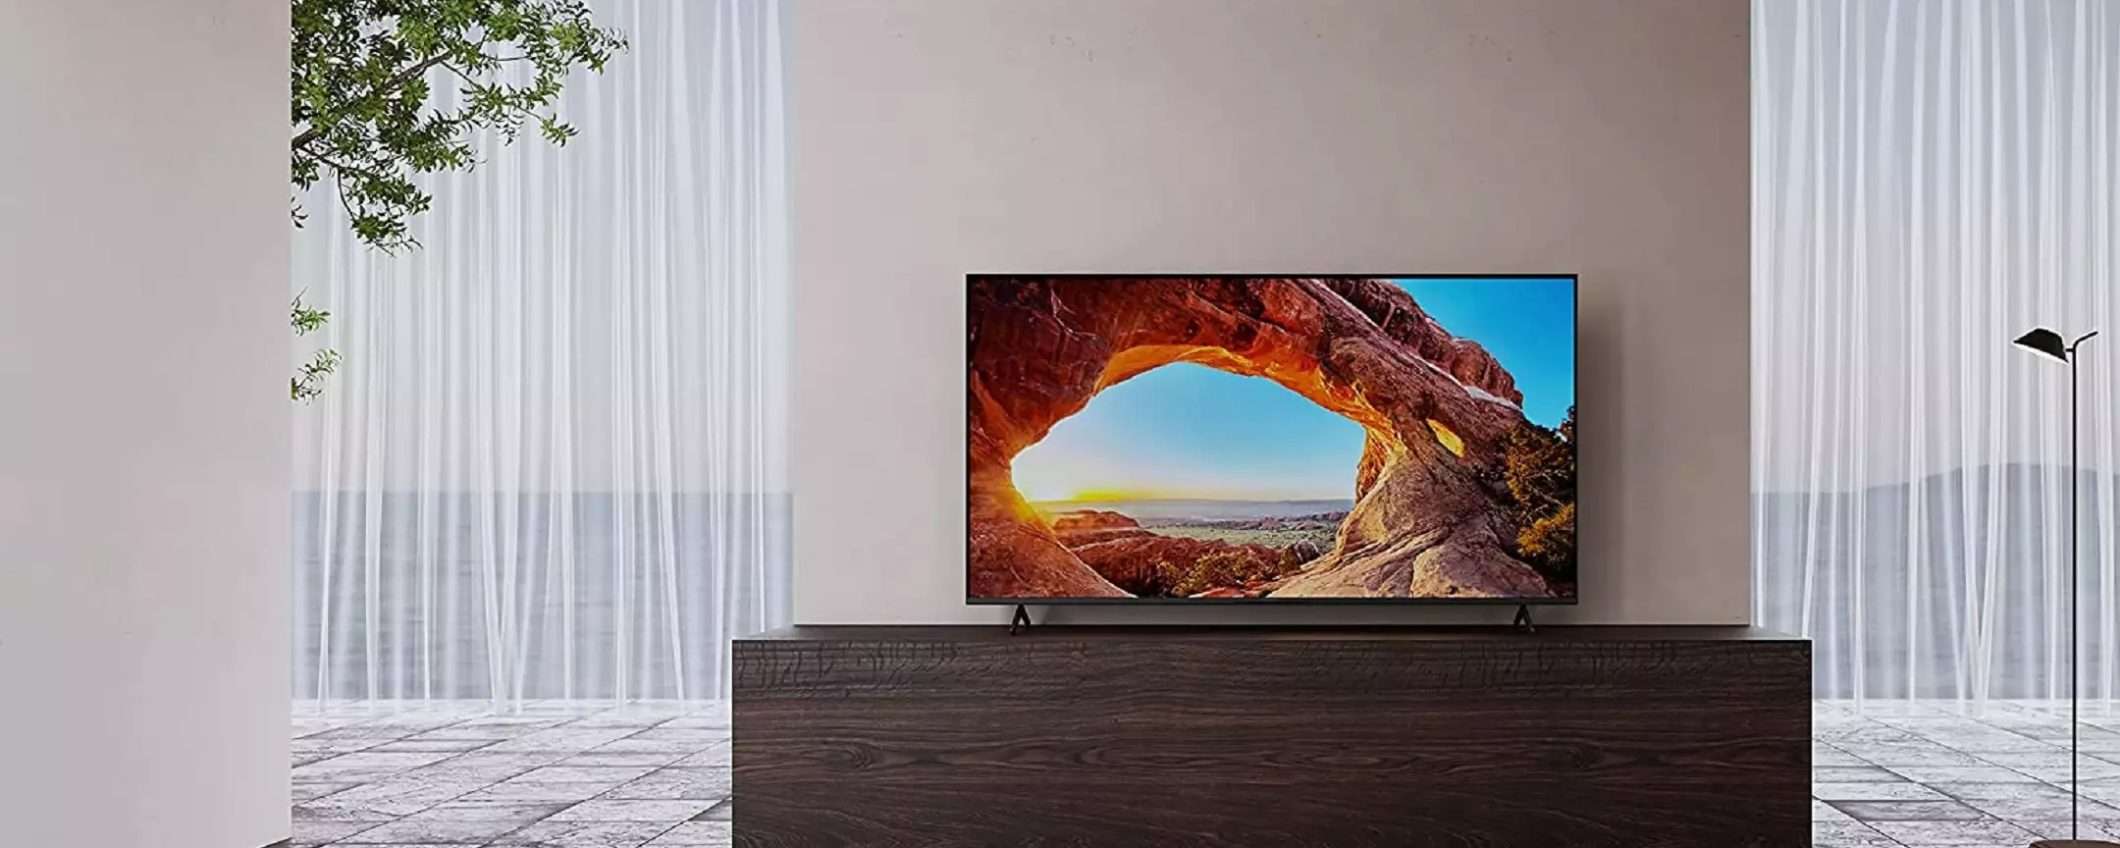 Google TV di Sony in offerta su Amazon: prezzo ridotto fino a 499€